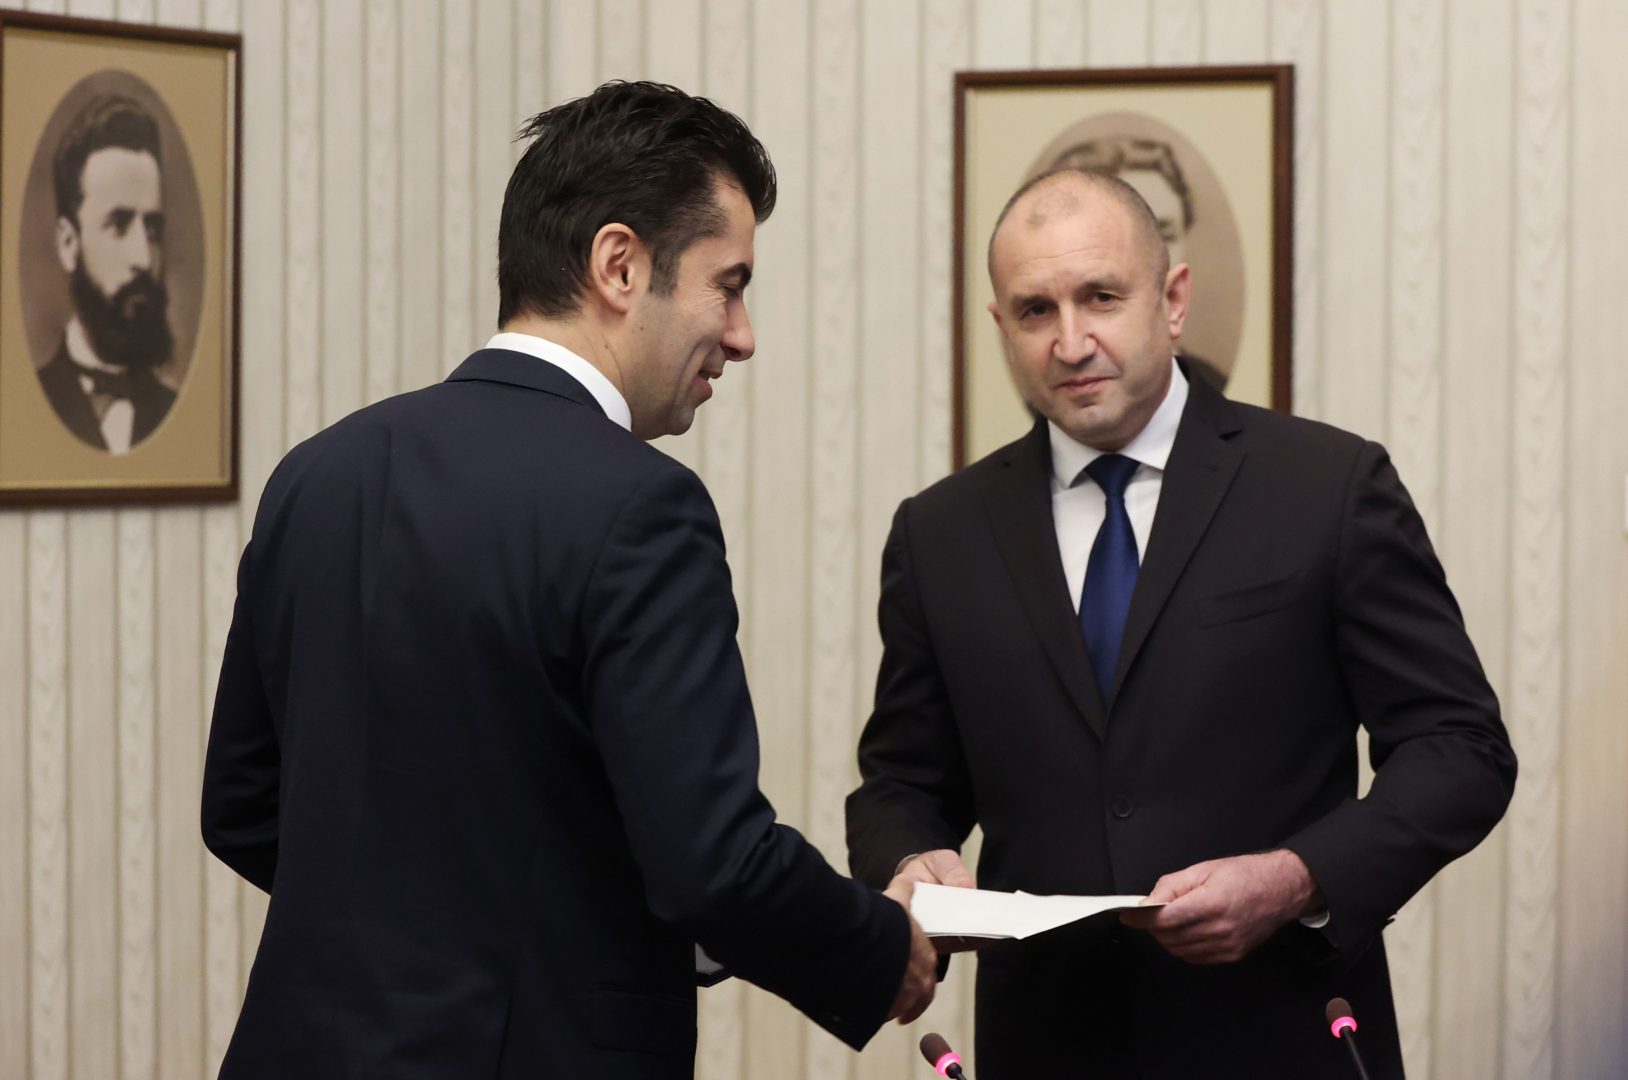 Премиер и президент в сблъсък за Северна Македония (ОБЗОР)